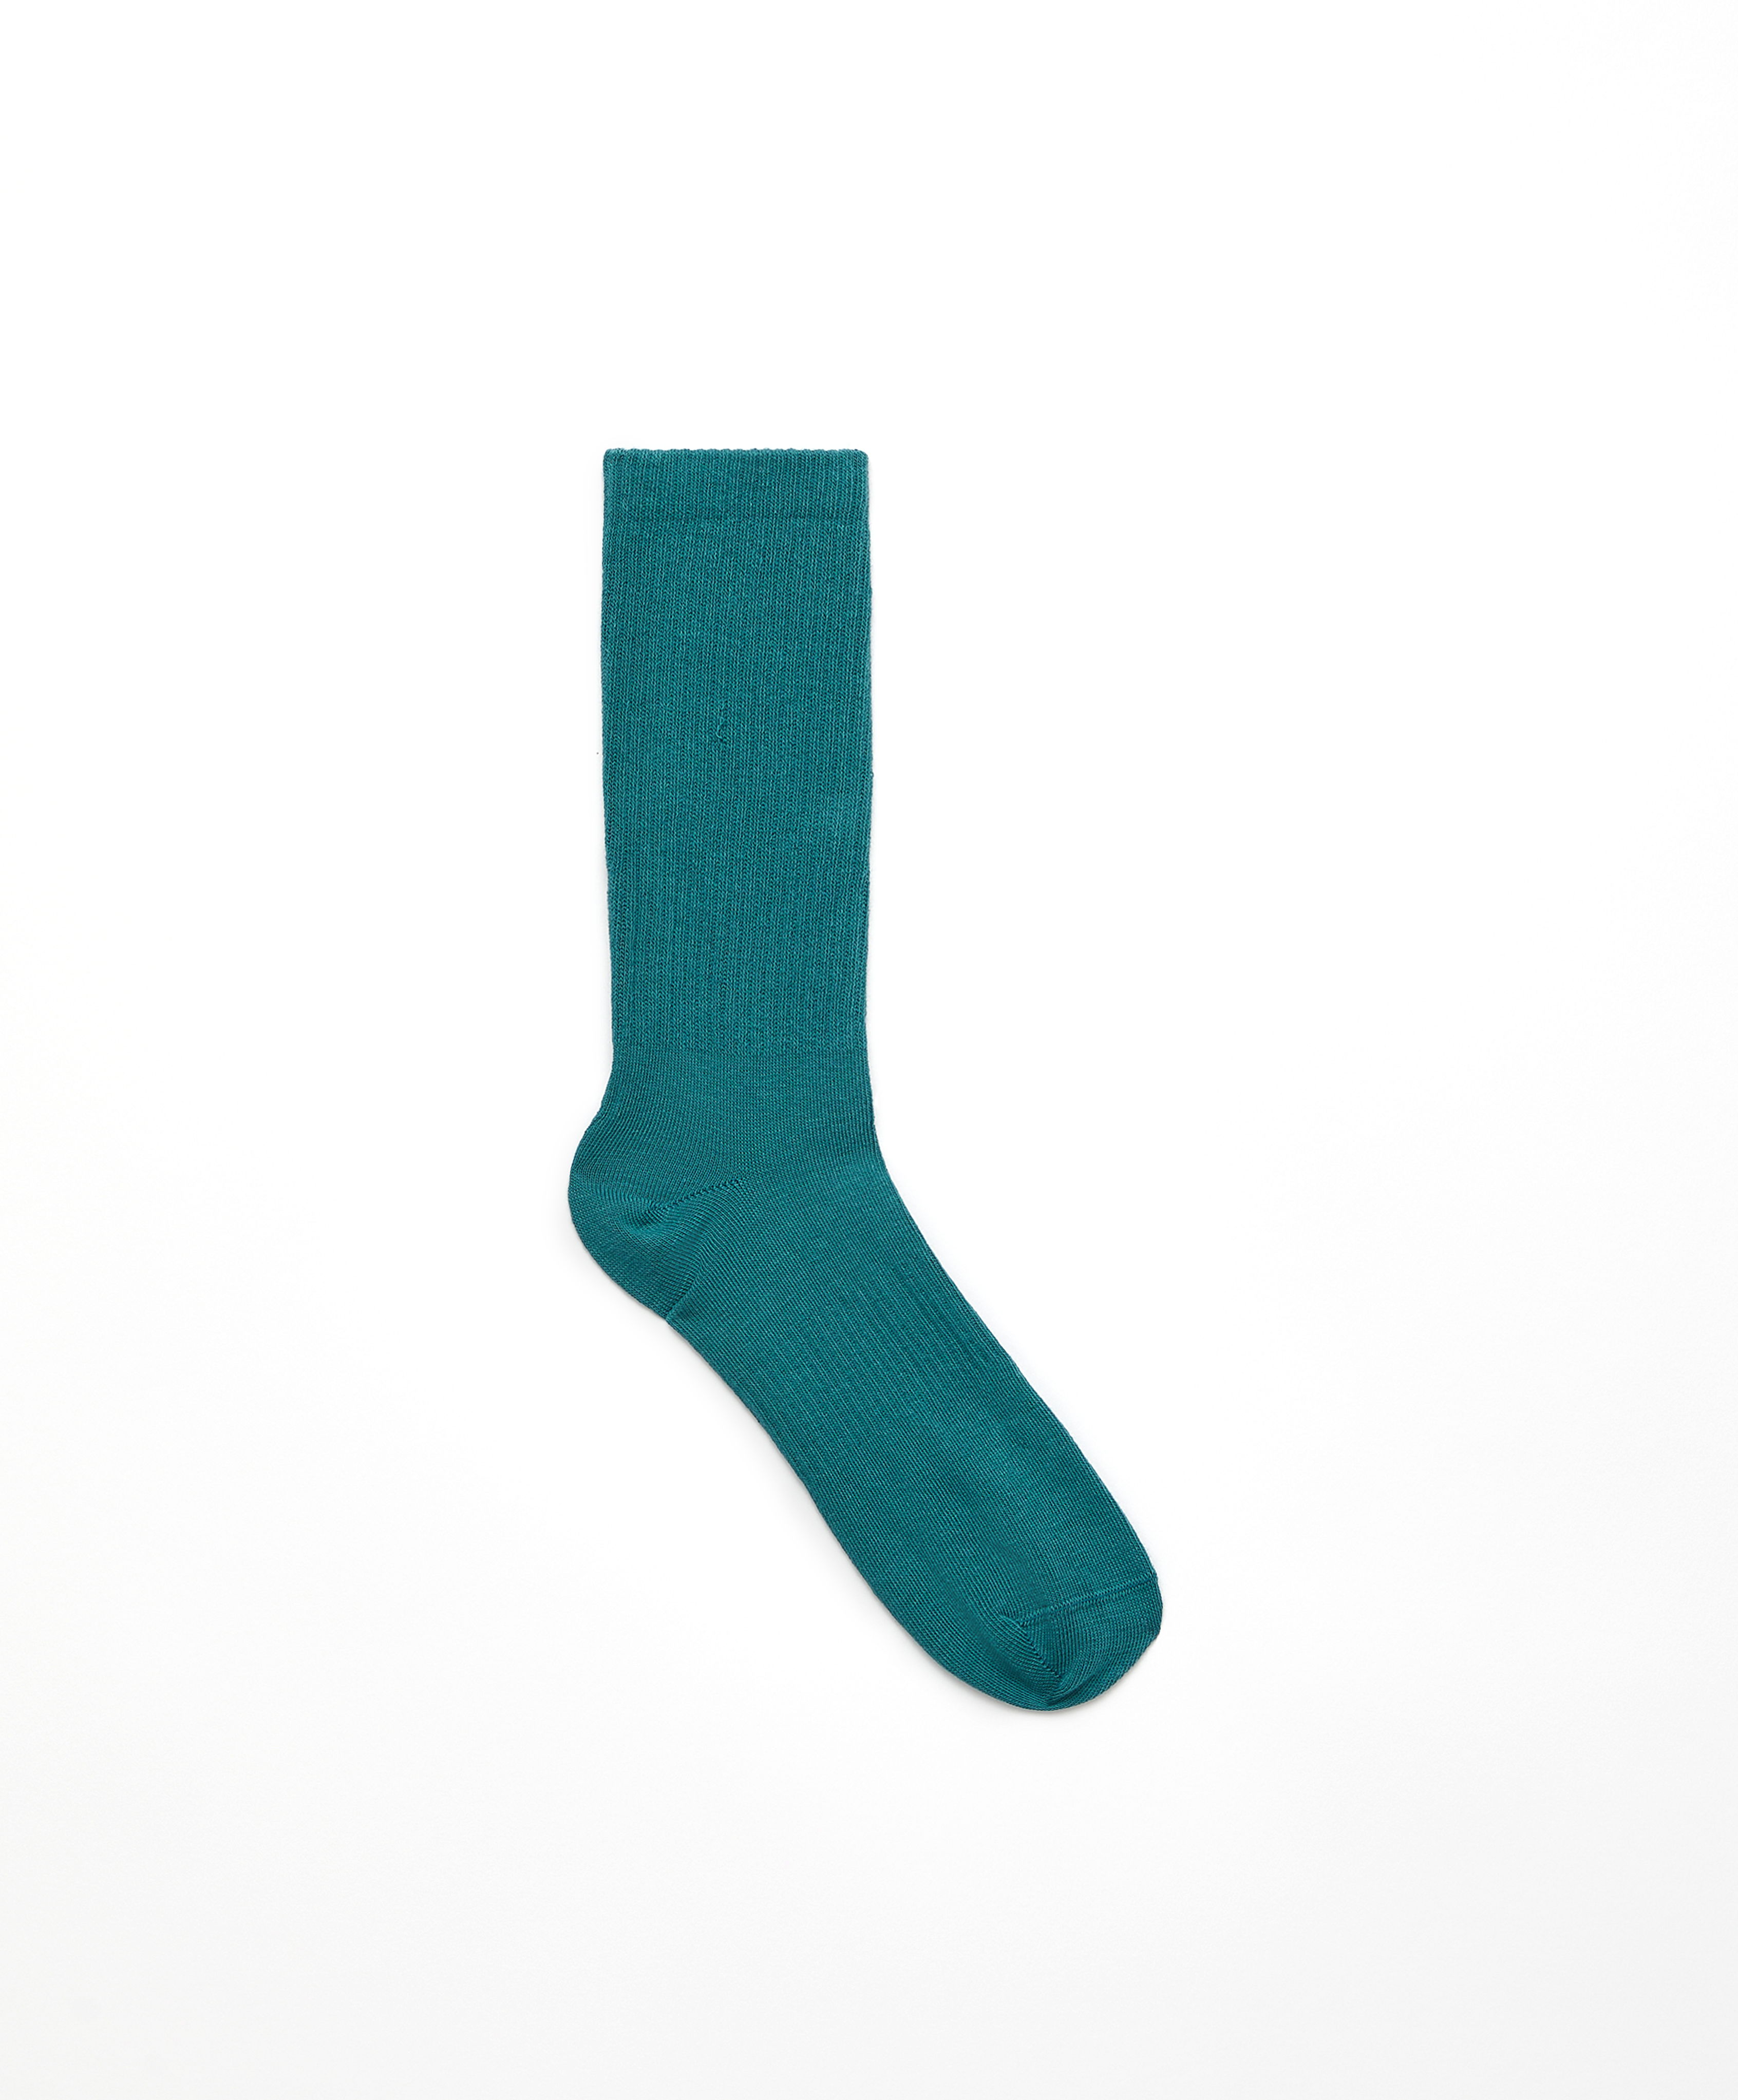 Plain rib classic sports socks in a cotton blend